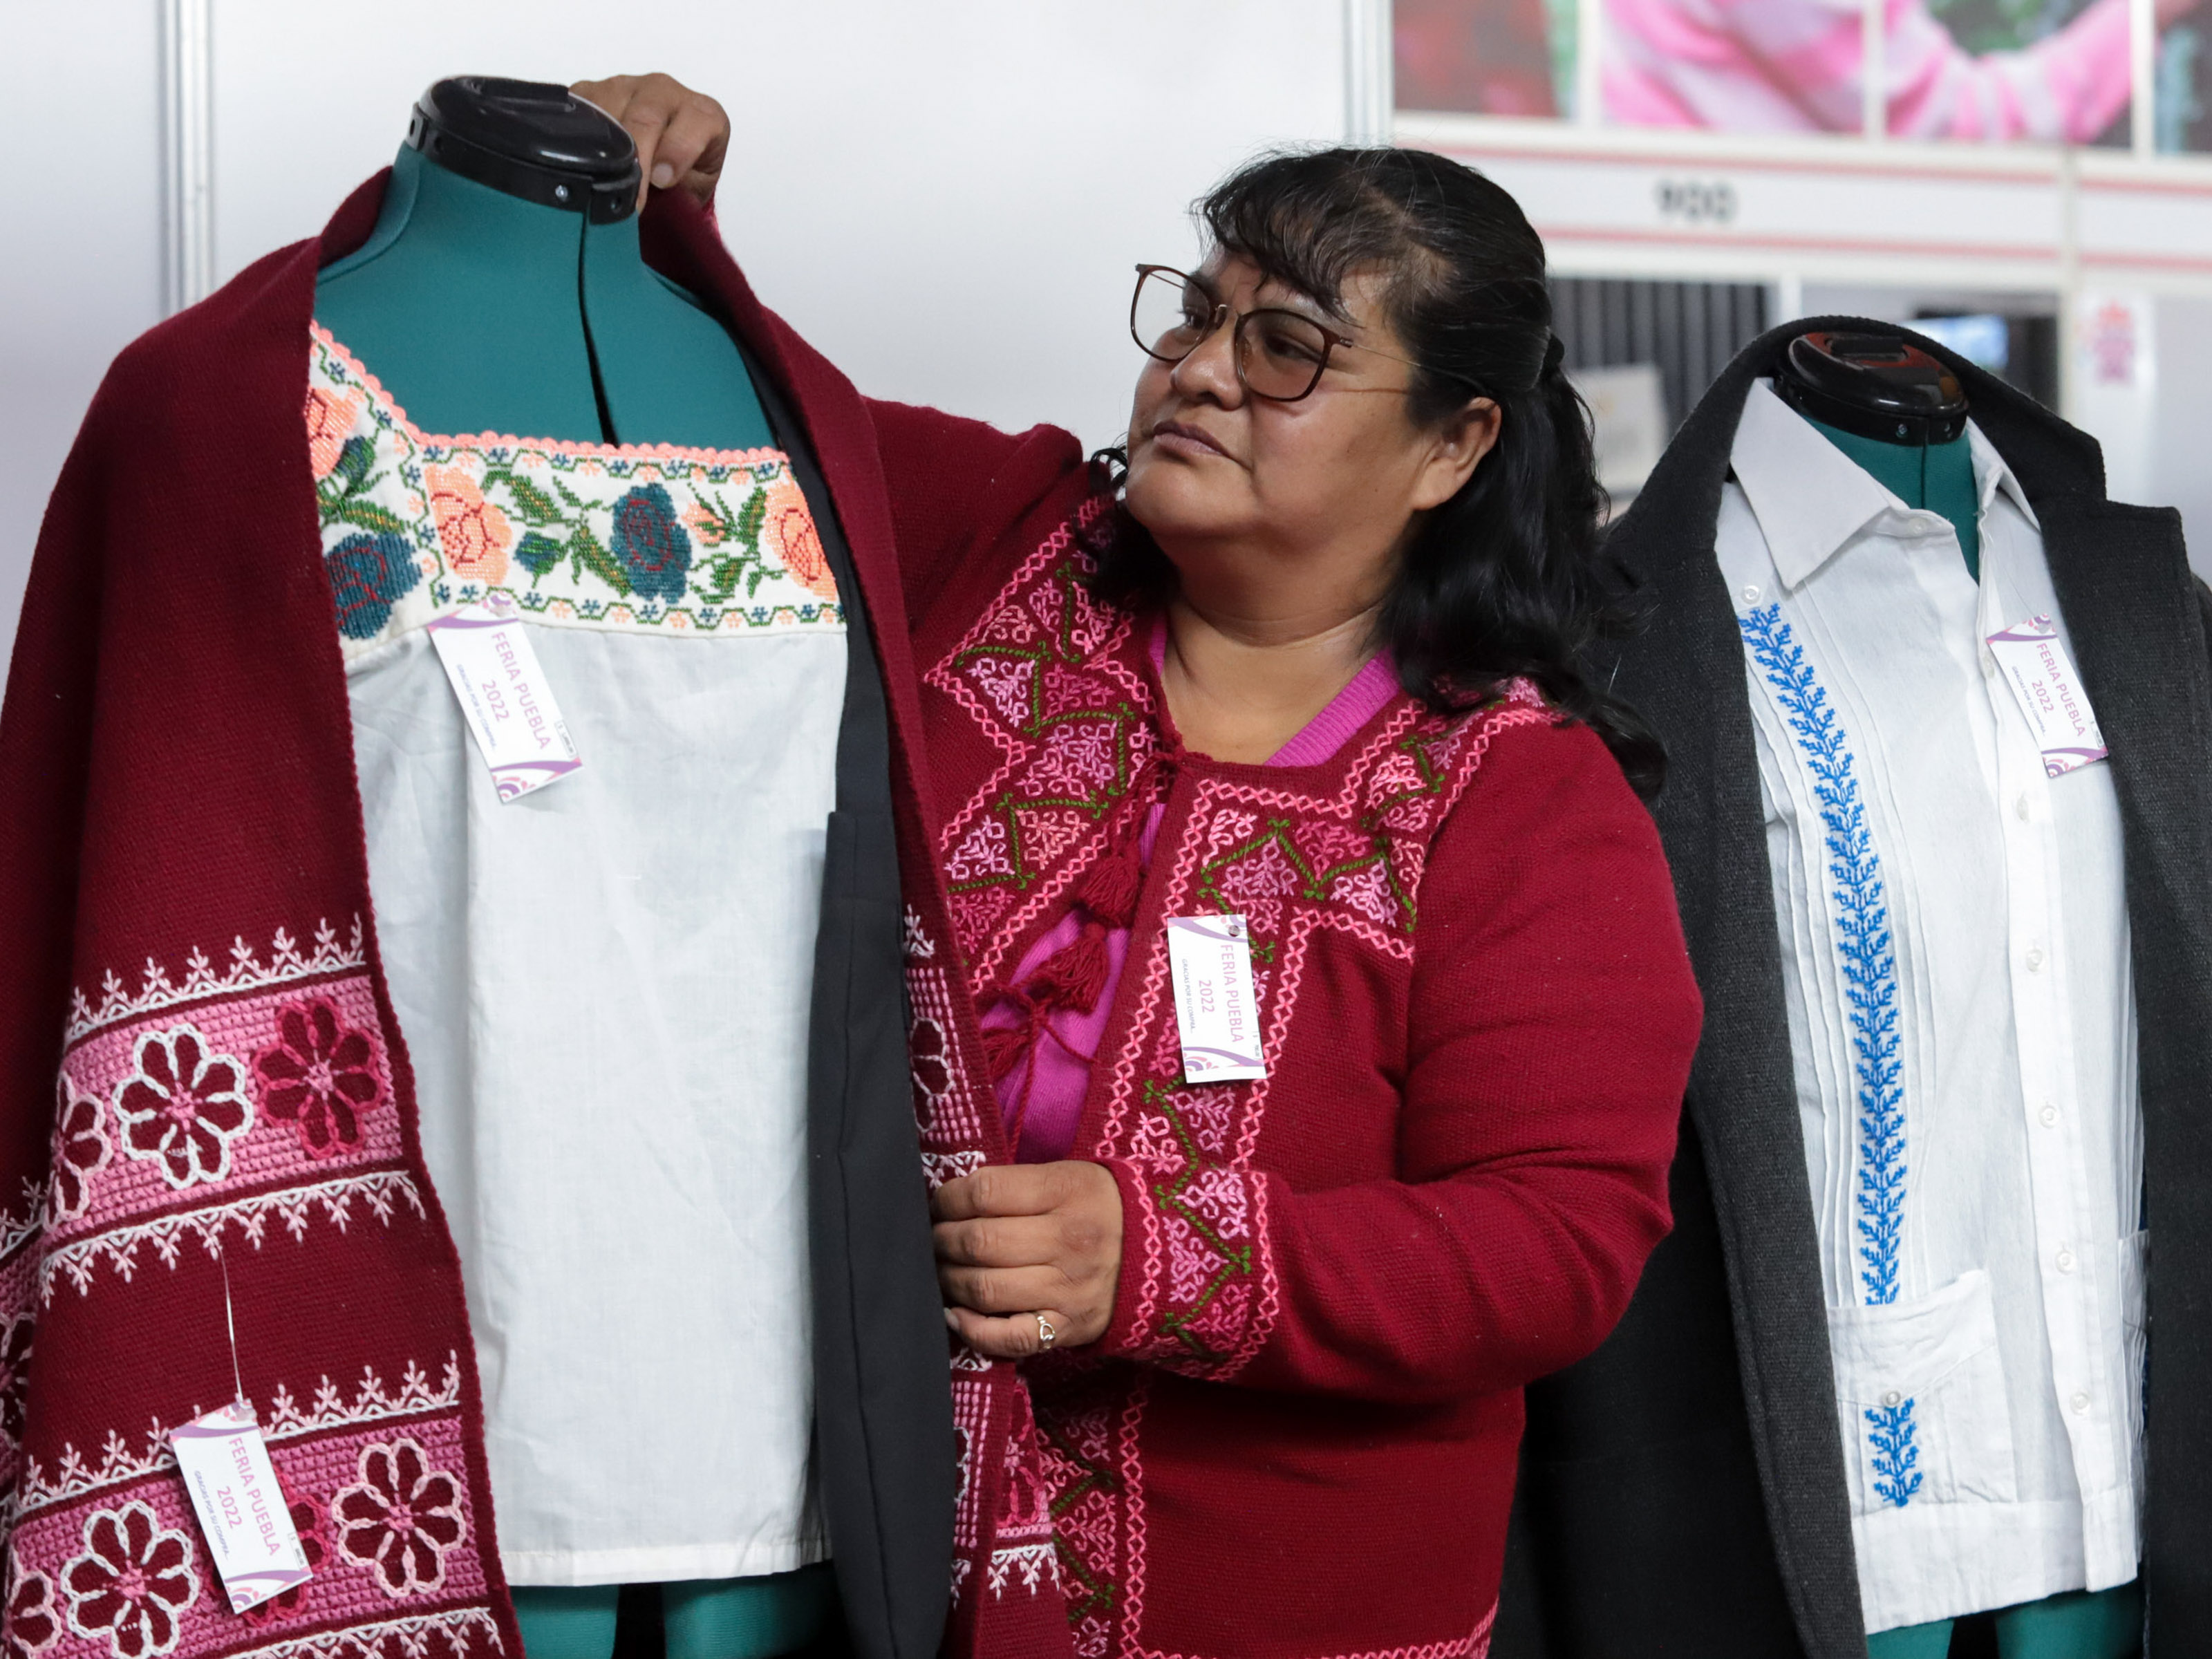 Apoya SEDIF a productores y artesanos con módulos en Feria de Puebla 2022